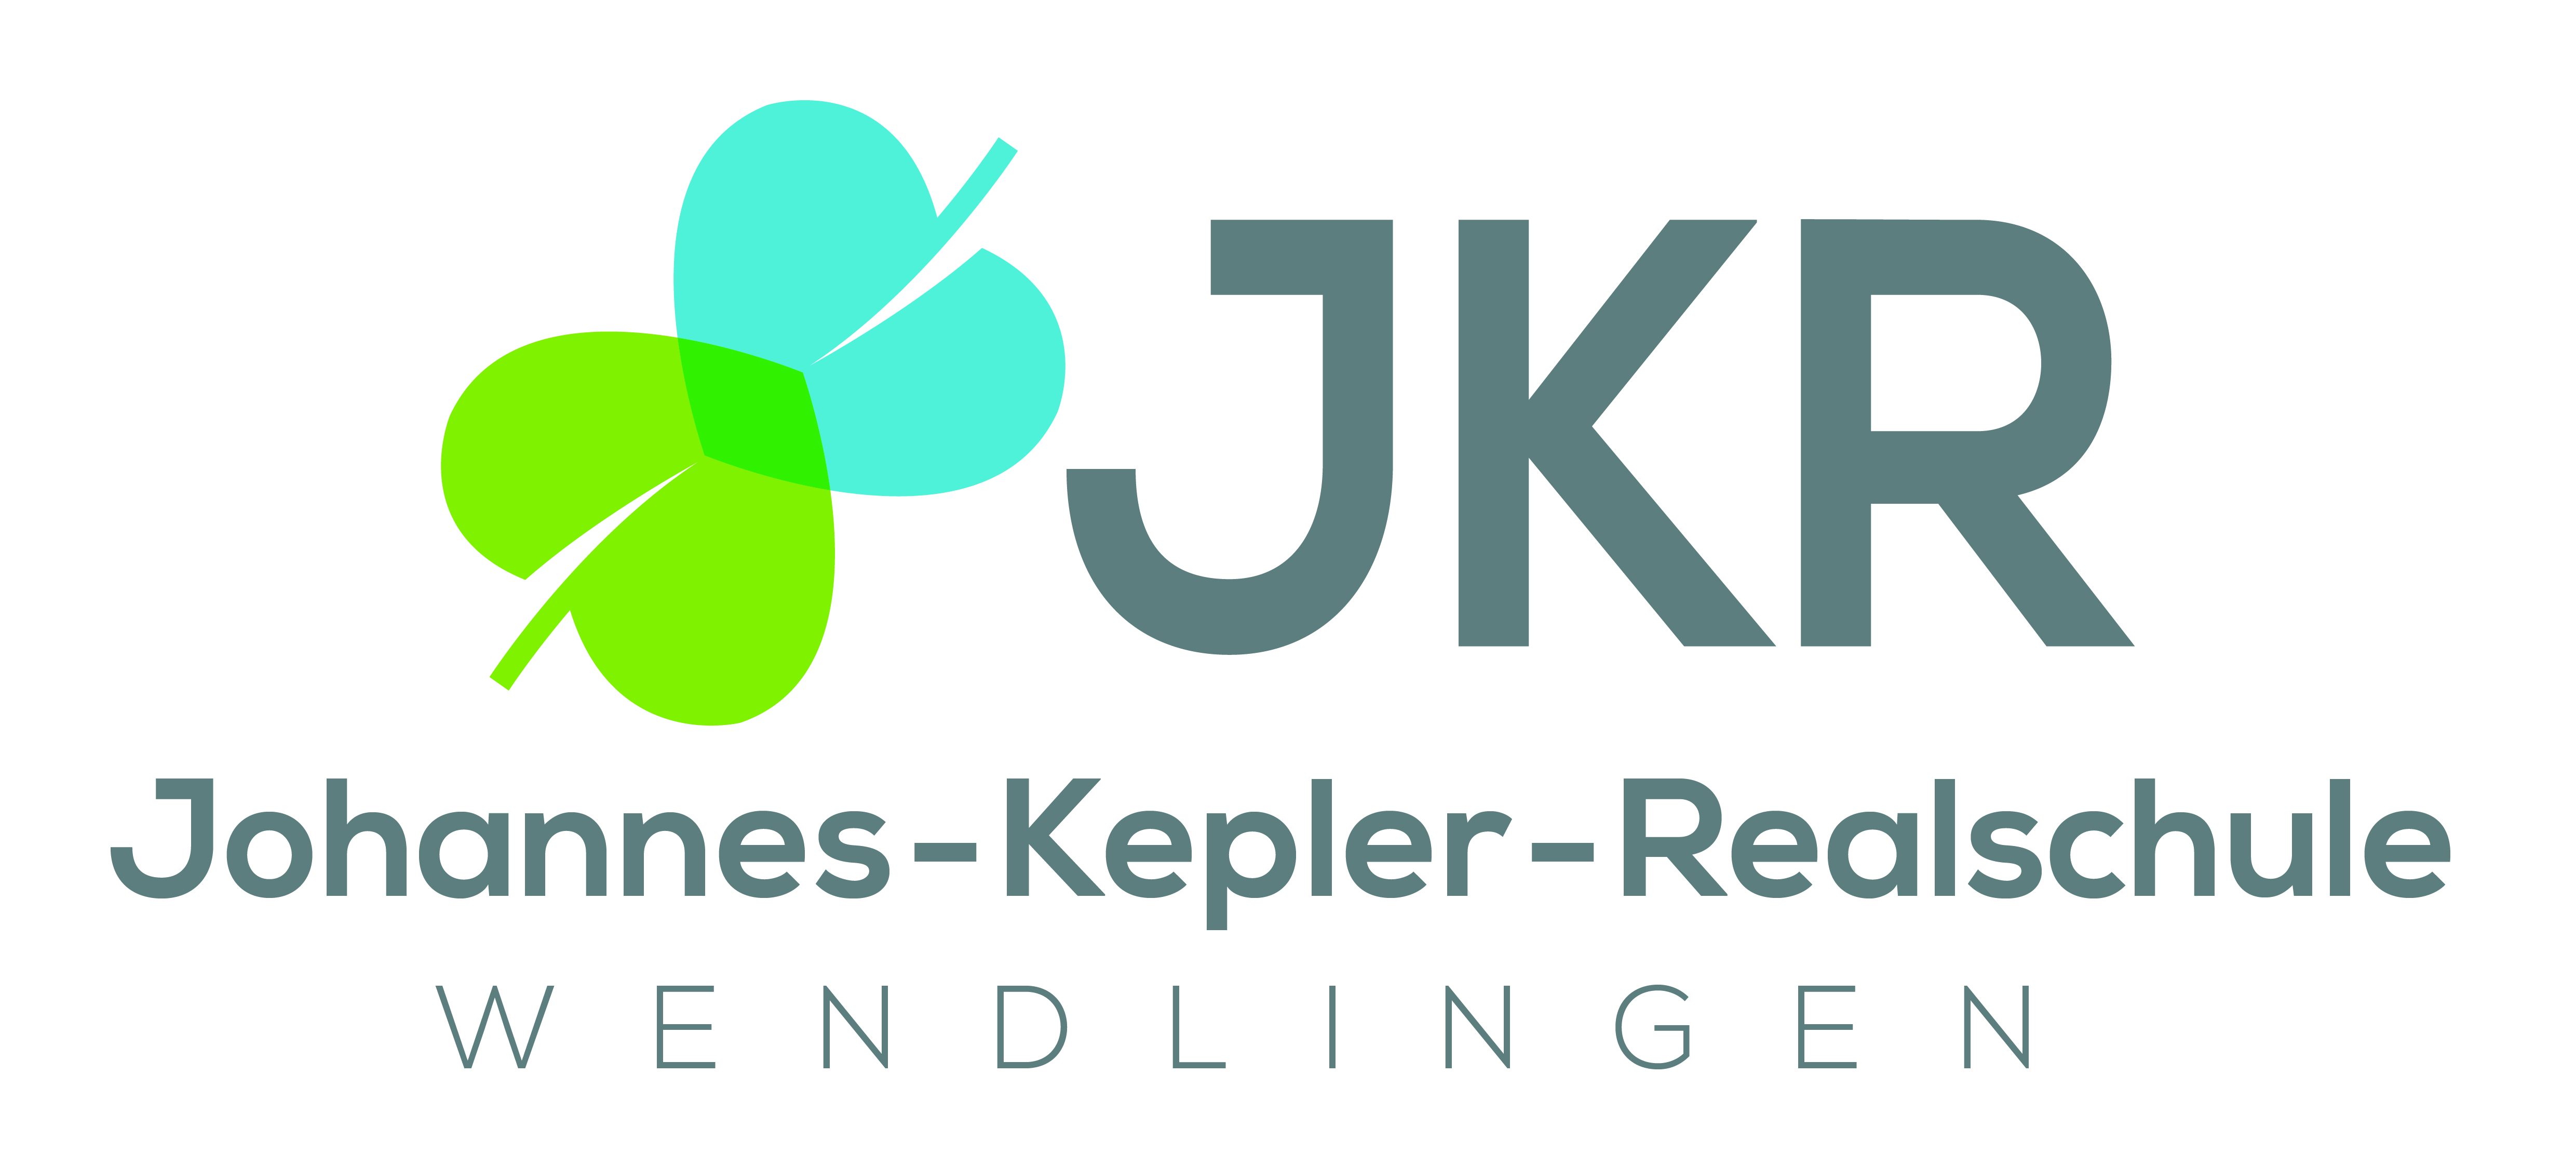 Johannes-Kepler-Realschule Wendlingen